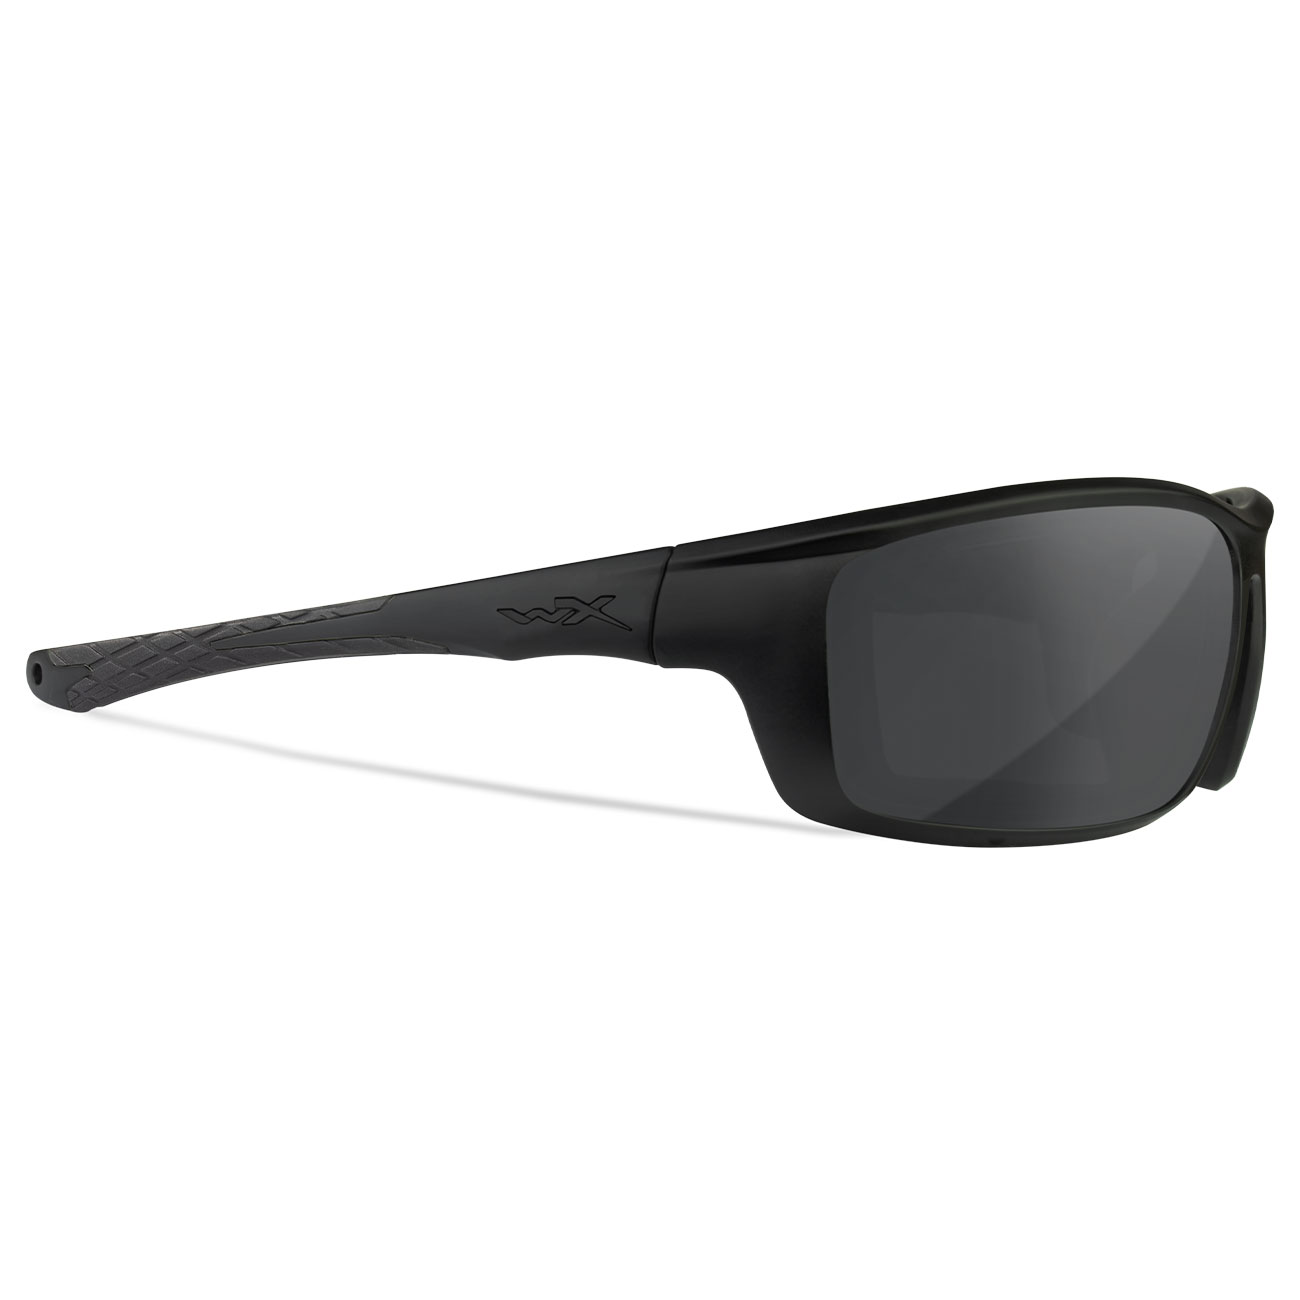 Wiley X Sonnenbrille Grid matt schwarz Glser grau inkl. Brillenetui und Facial Cavity Dichtung Bild 4